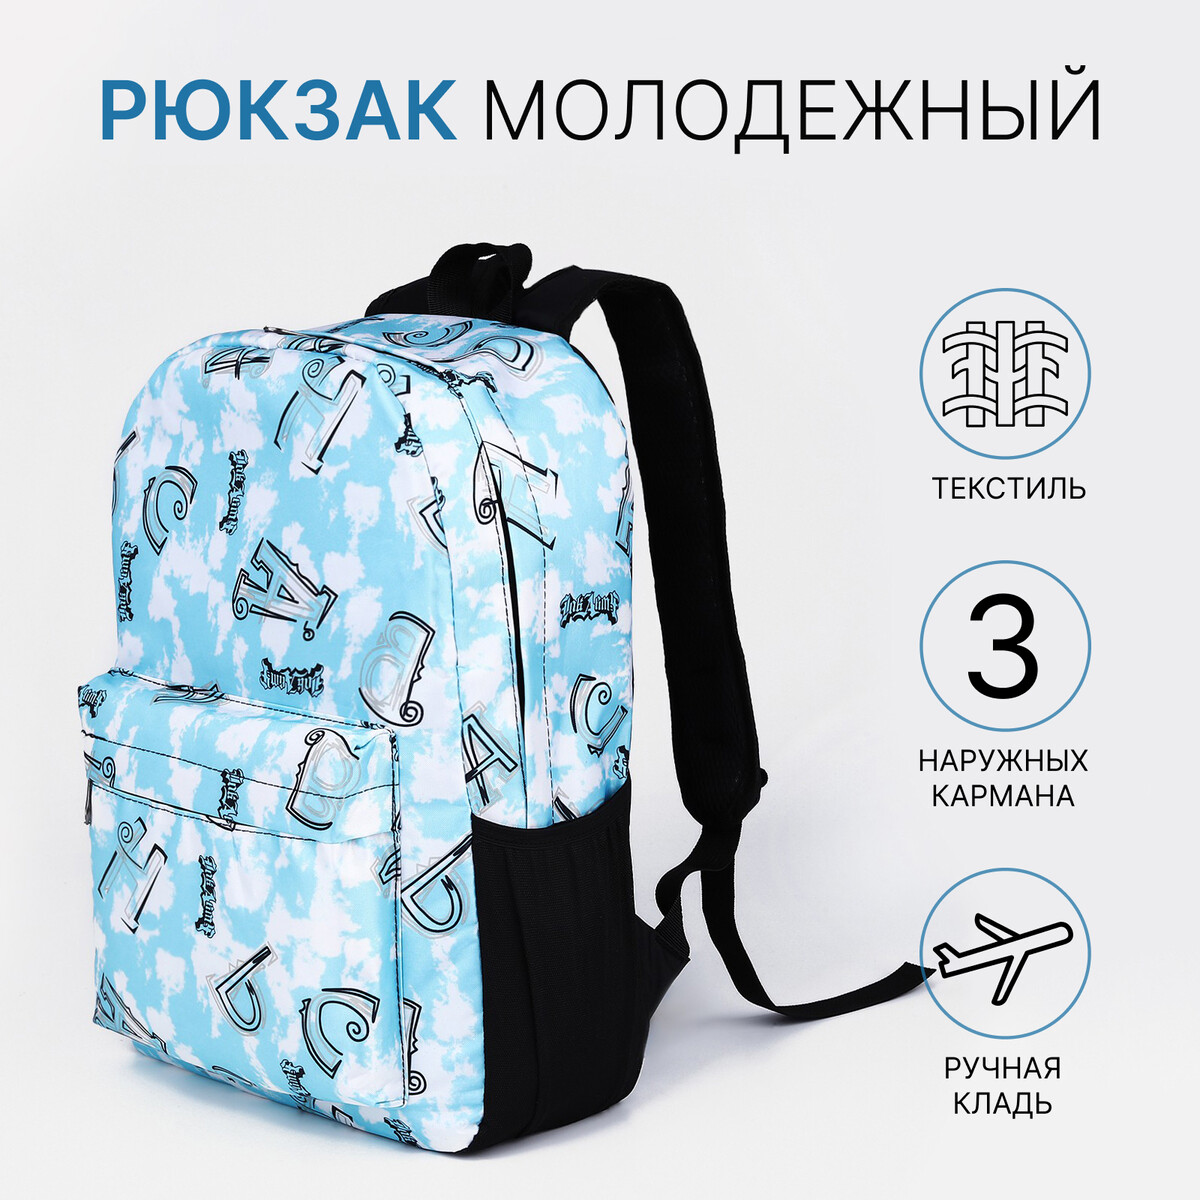 Рюкзак молодежный из текстиля на молнии, 3 кармана, цвет голубой